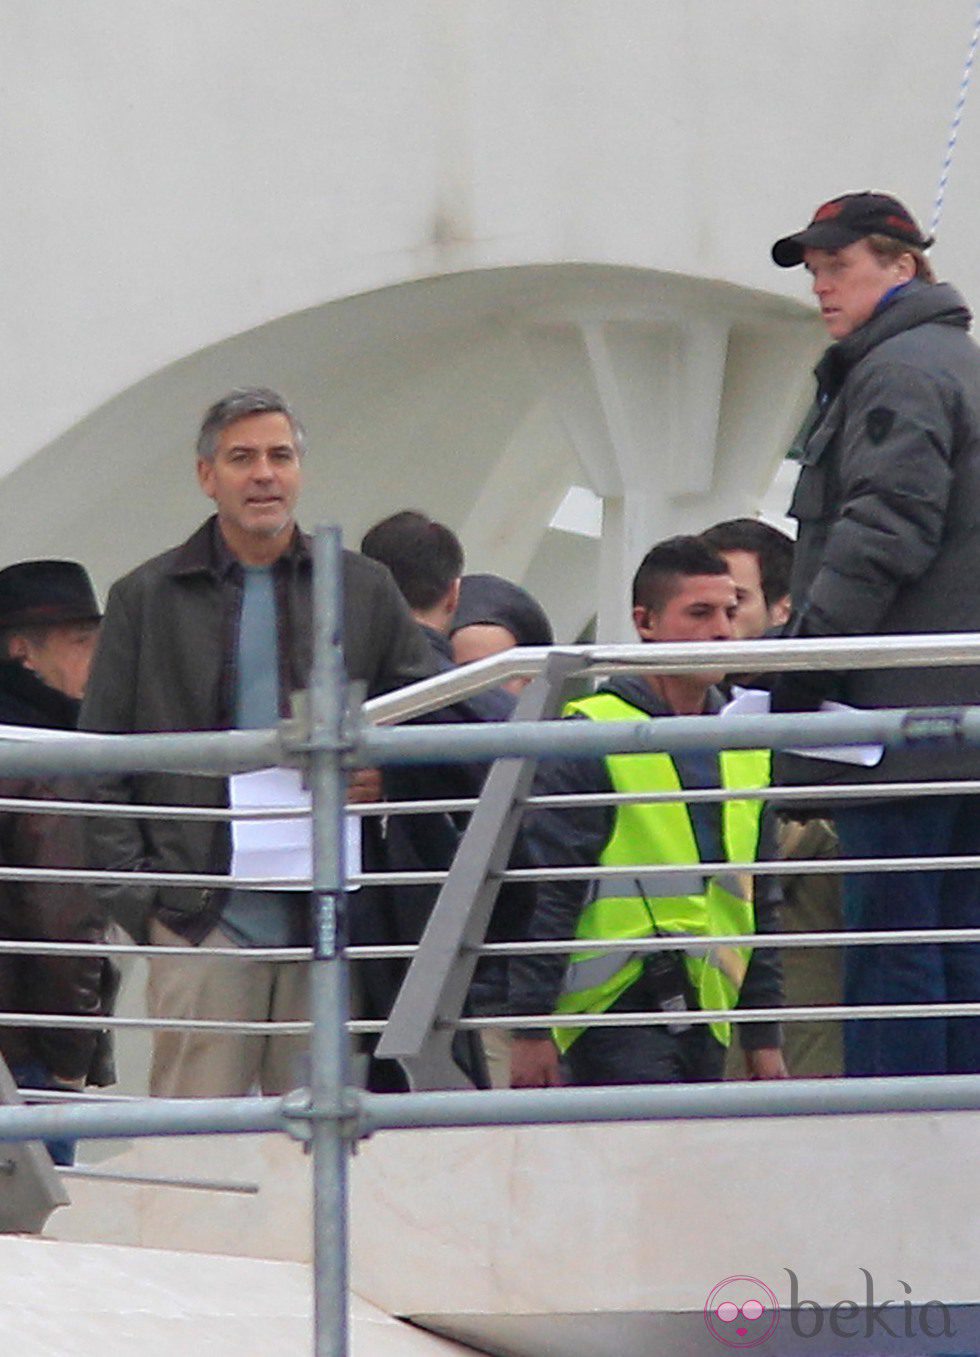 George Clooney en el set de rodaje de 'Tomorrowland' en la Ciudad de las Artes y las Ciencias de Valencia